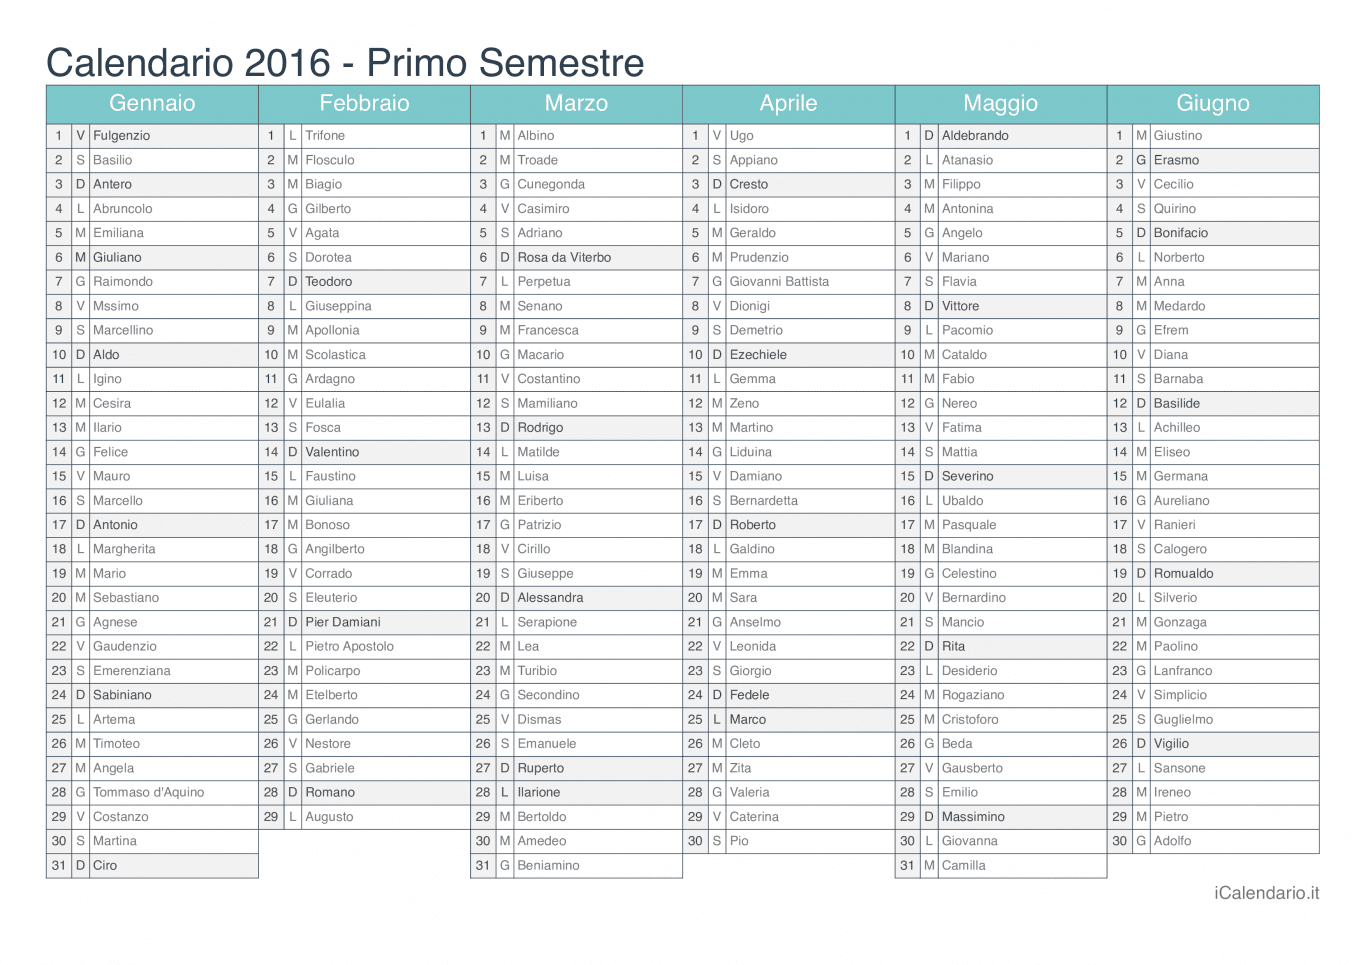 Calendario semestrale 2016 con santi e festivi - Turchese